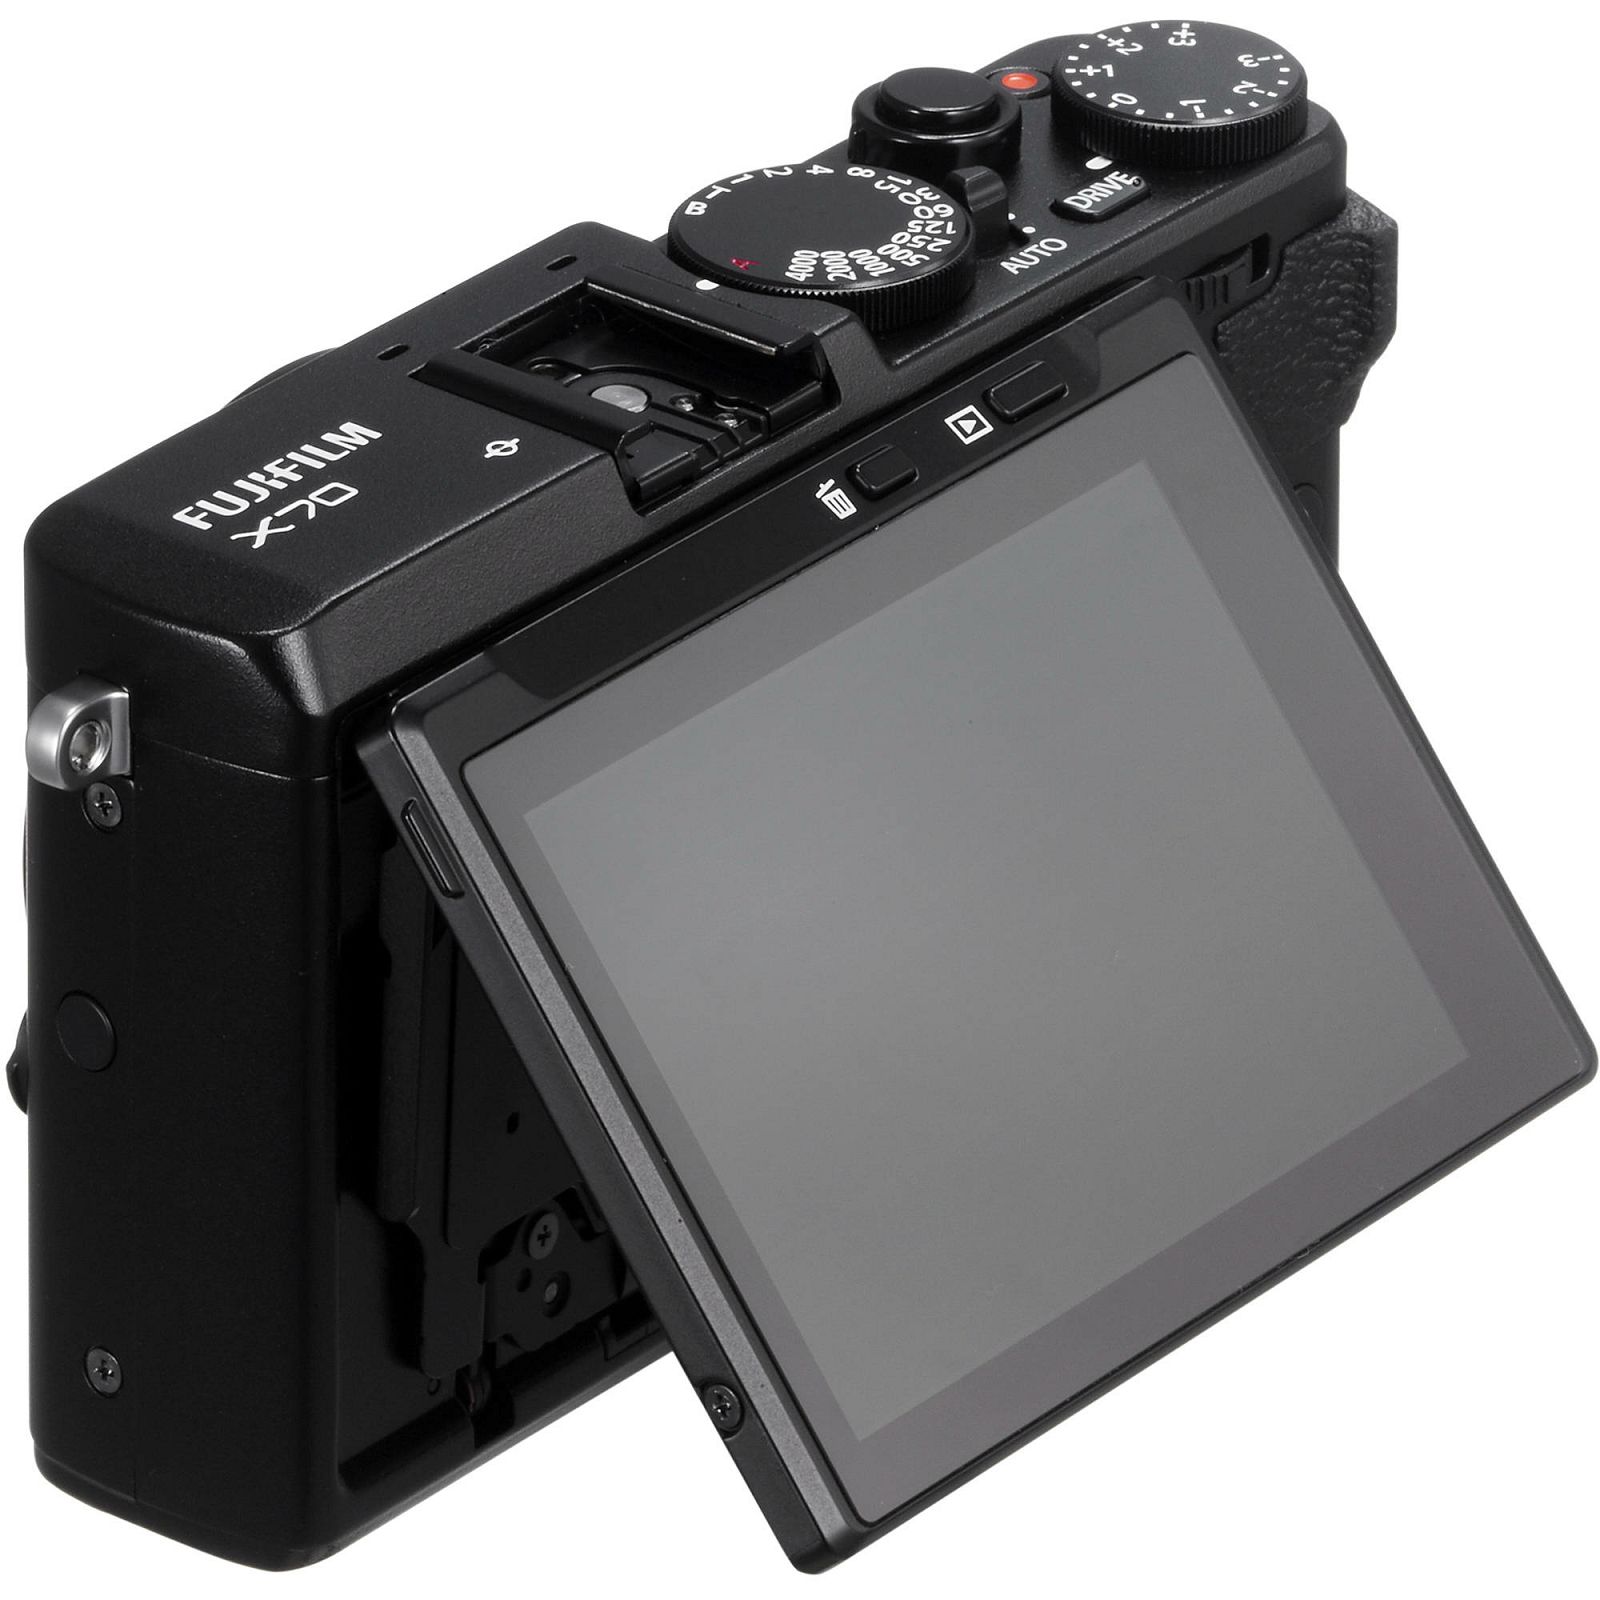 Fujifilm X70 Black crni digitalni fotoaparat Digital Camera Fuji X-70 Kompaktni fotoaparat